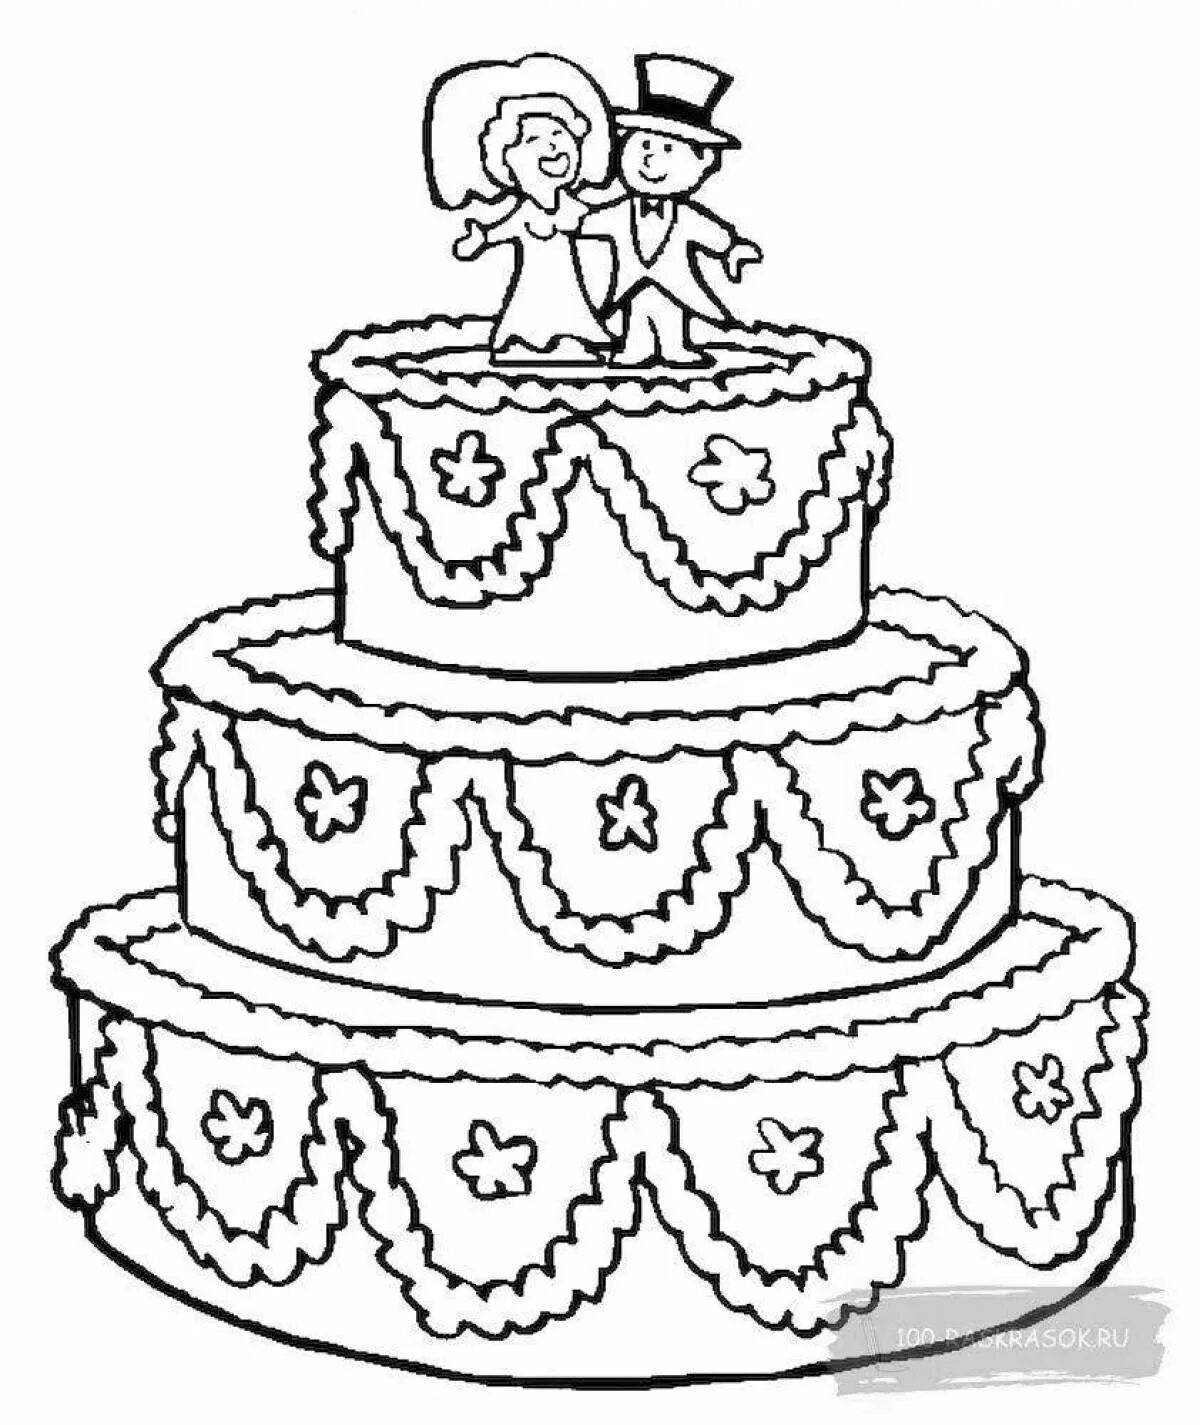 Распечатать картинку на торт. Раскраска торт. Торт раскраска для детей. Тортик раскраска для детей. Раскраски для девочек тортики.